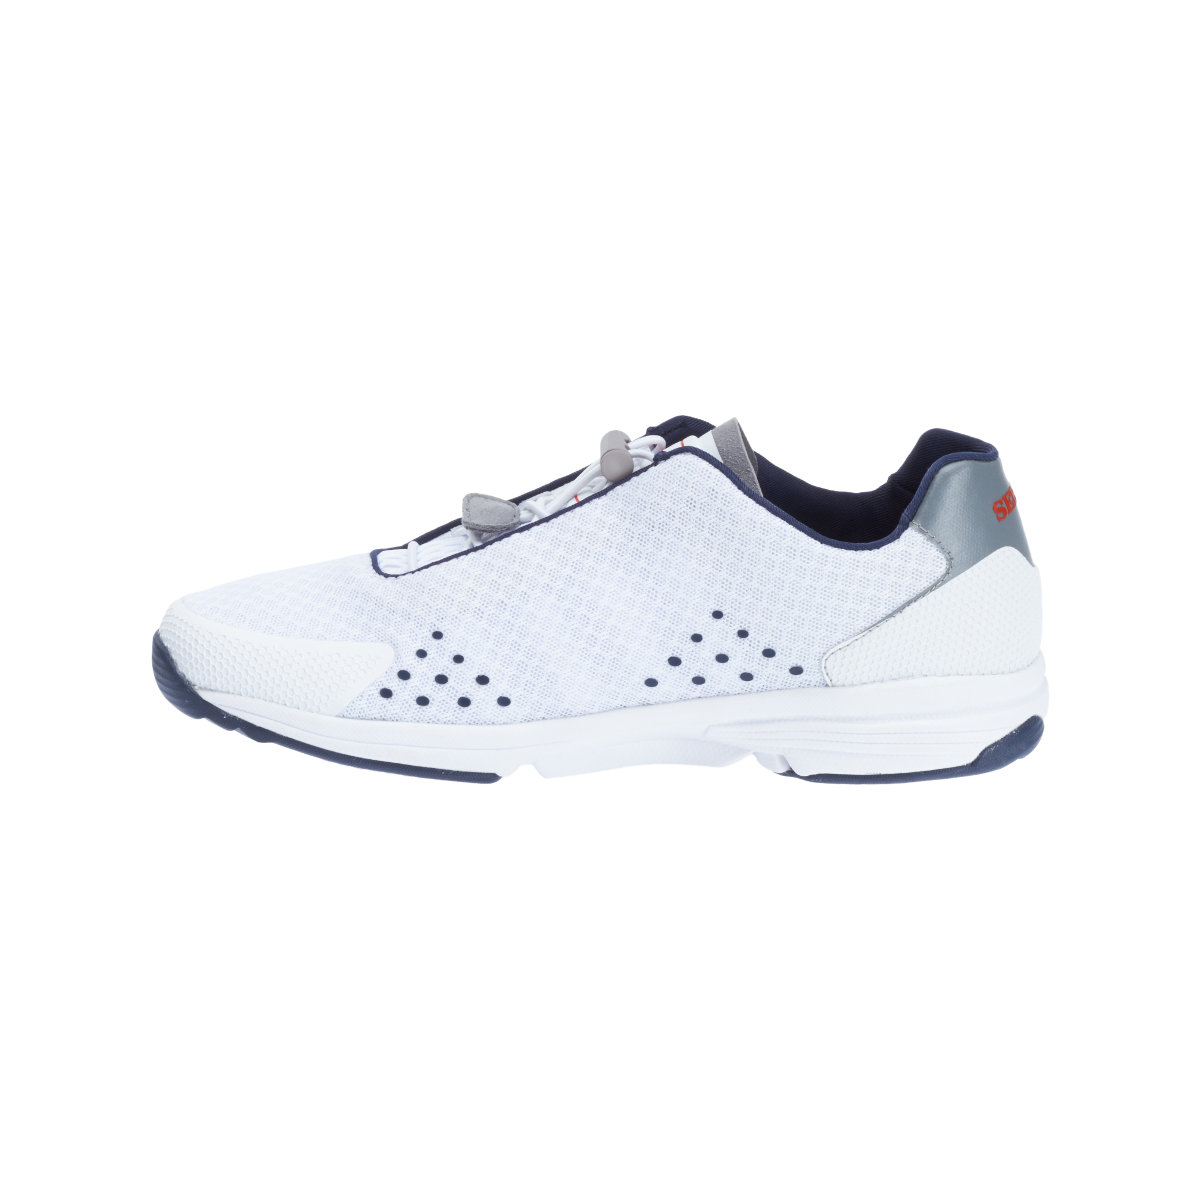 Sebago Cyphon Sea Sport chaussures à voile femme blanche, taille EU 42 (US 10,5)